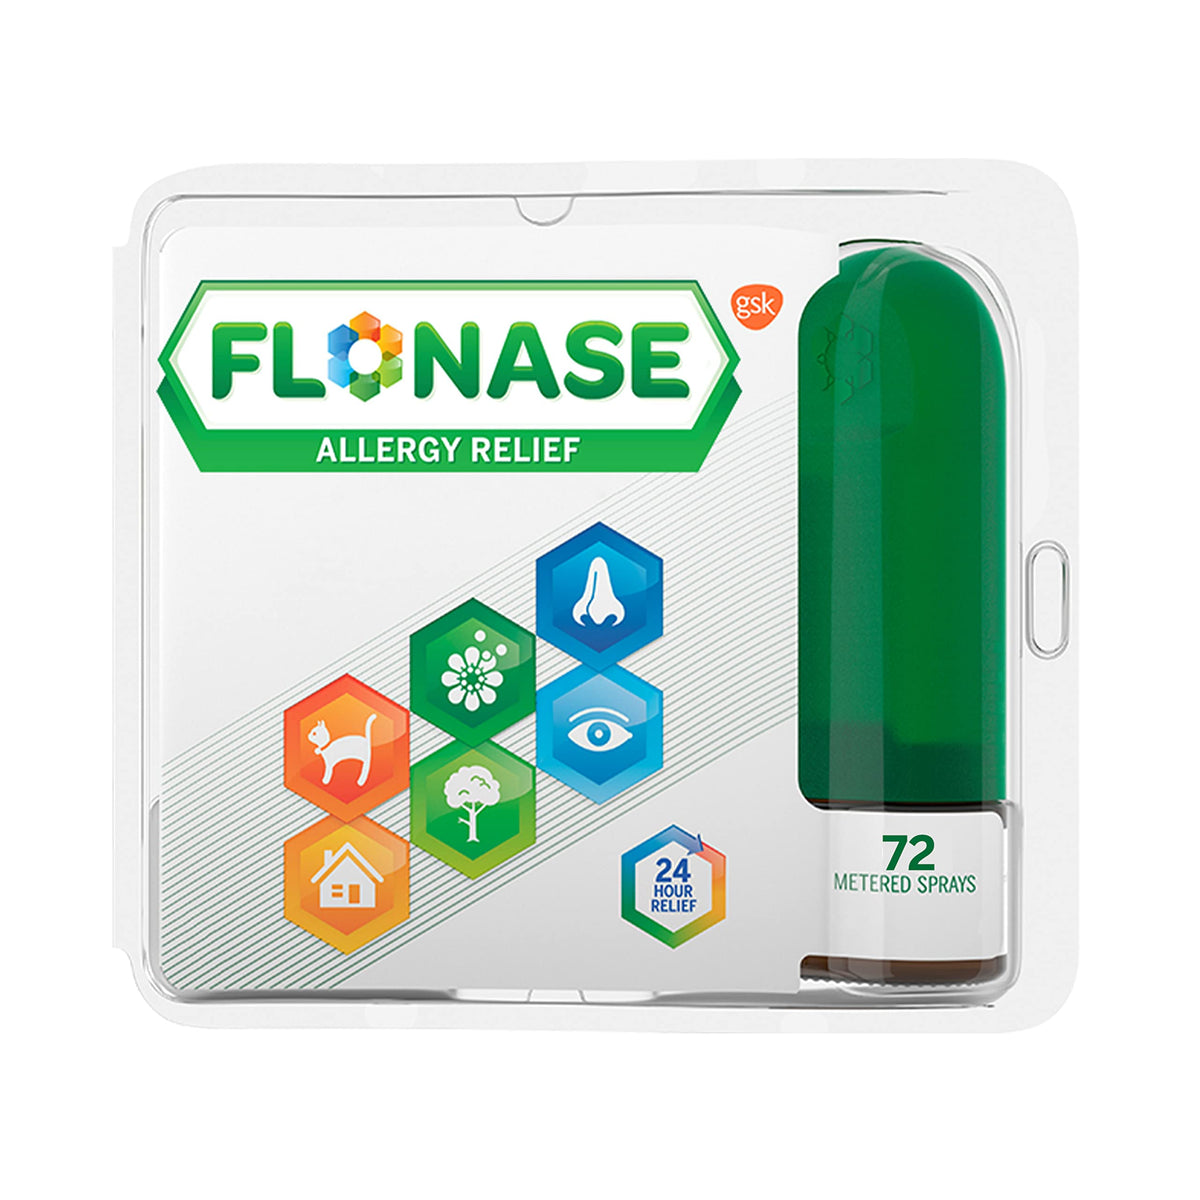 Flonase Allergy Relief Nasal Spray, 24 Hour Non Drowsy Allergy Medicine, Metered Nasal Spray - 72 Sprays - Fall and Seasonal Allergy Relief